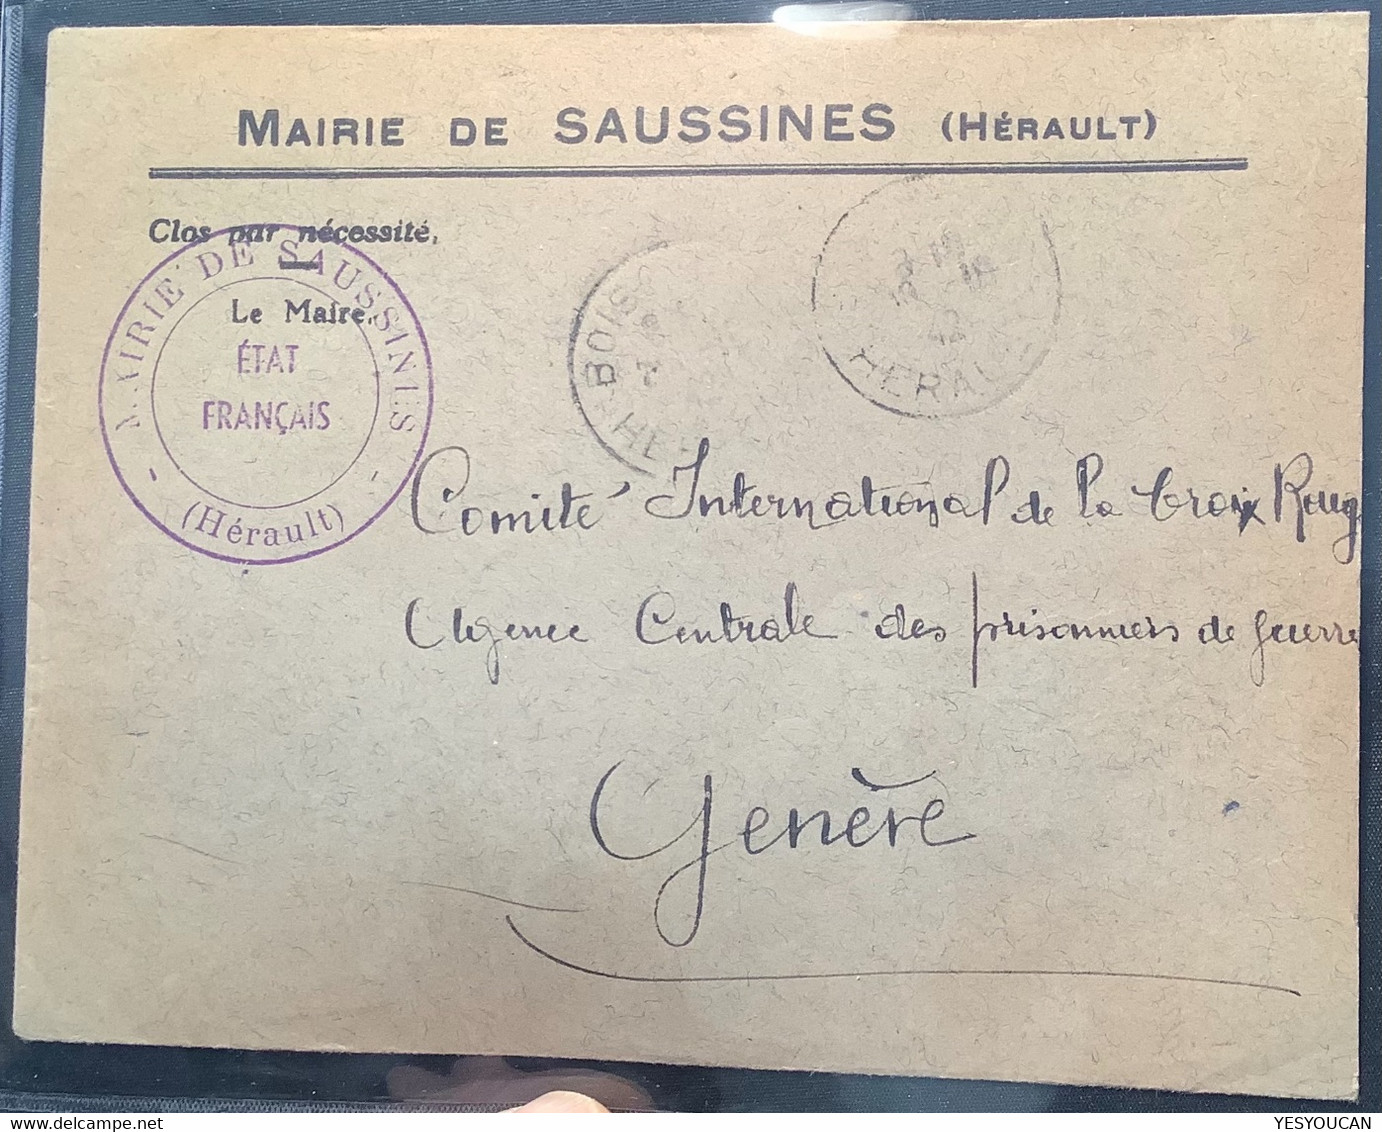 ÉTAT FRANÇAIS MAIRIE SAUSSINES HERAULT 1942 >CROIX ROUGE Genéve Suisse (France Red Cross War Cover Lettre Pow - Guerre De 1939-45